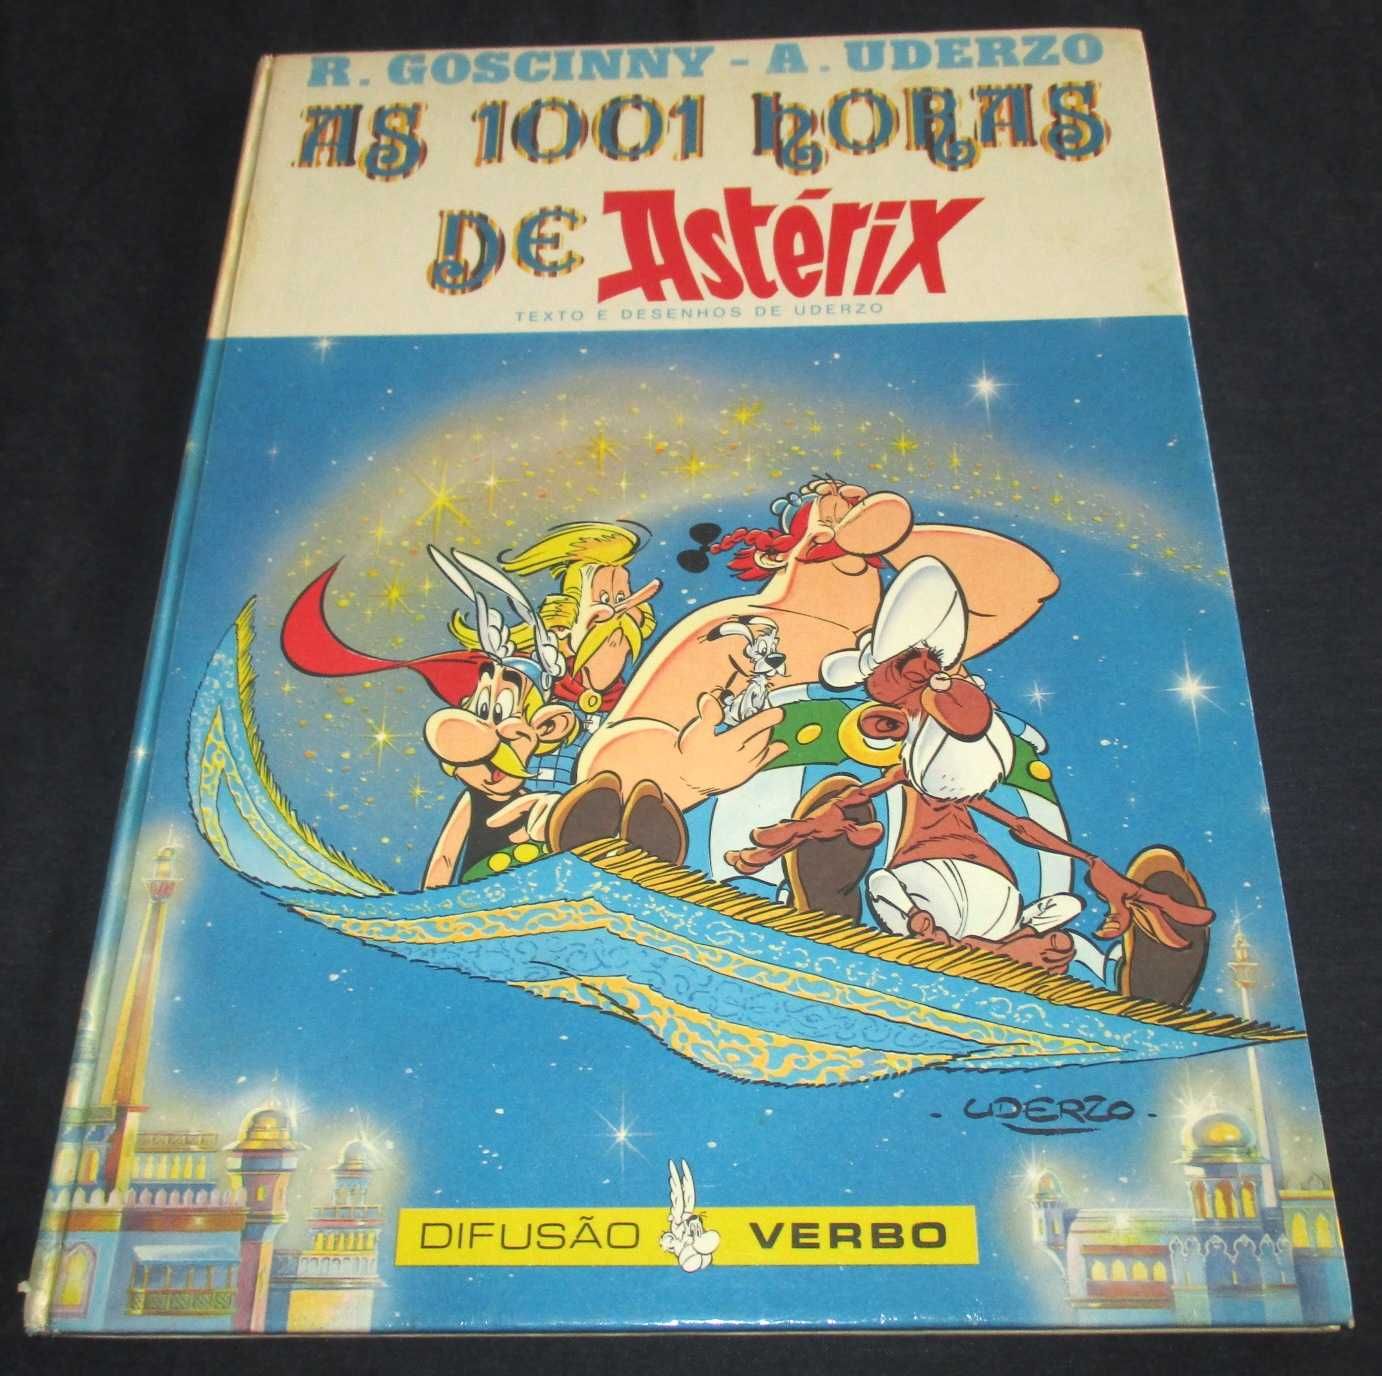 Livro As 1001 Horas de Astérix Verbo 1 edição 1987